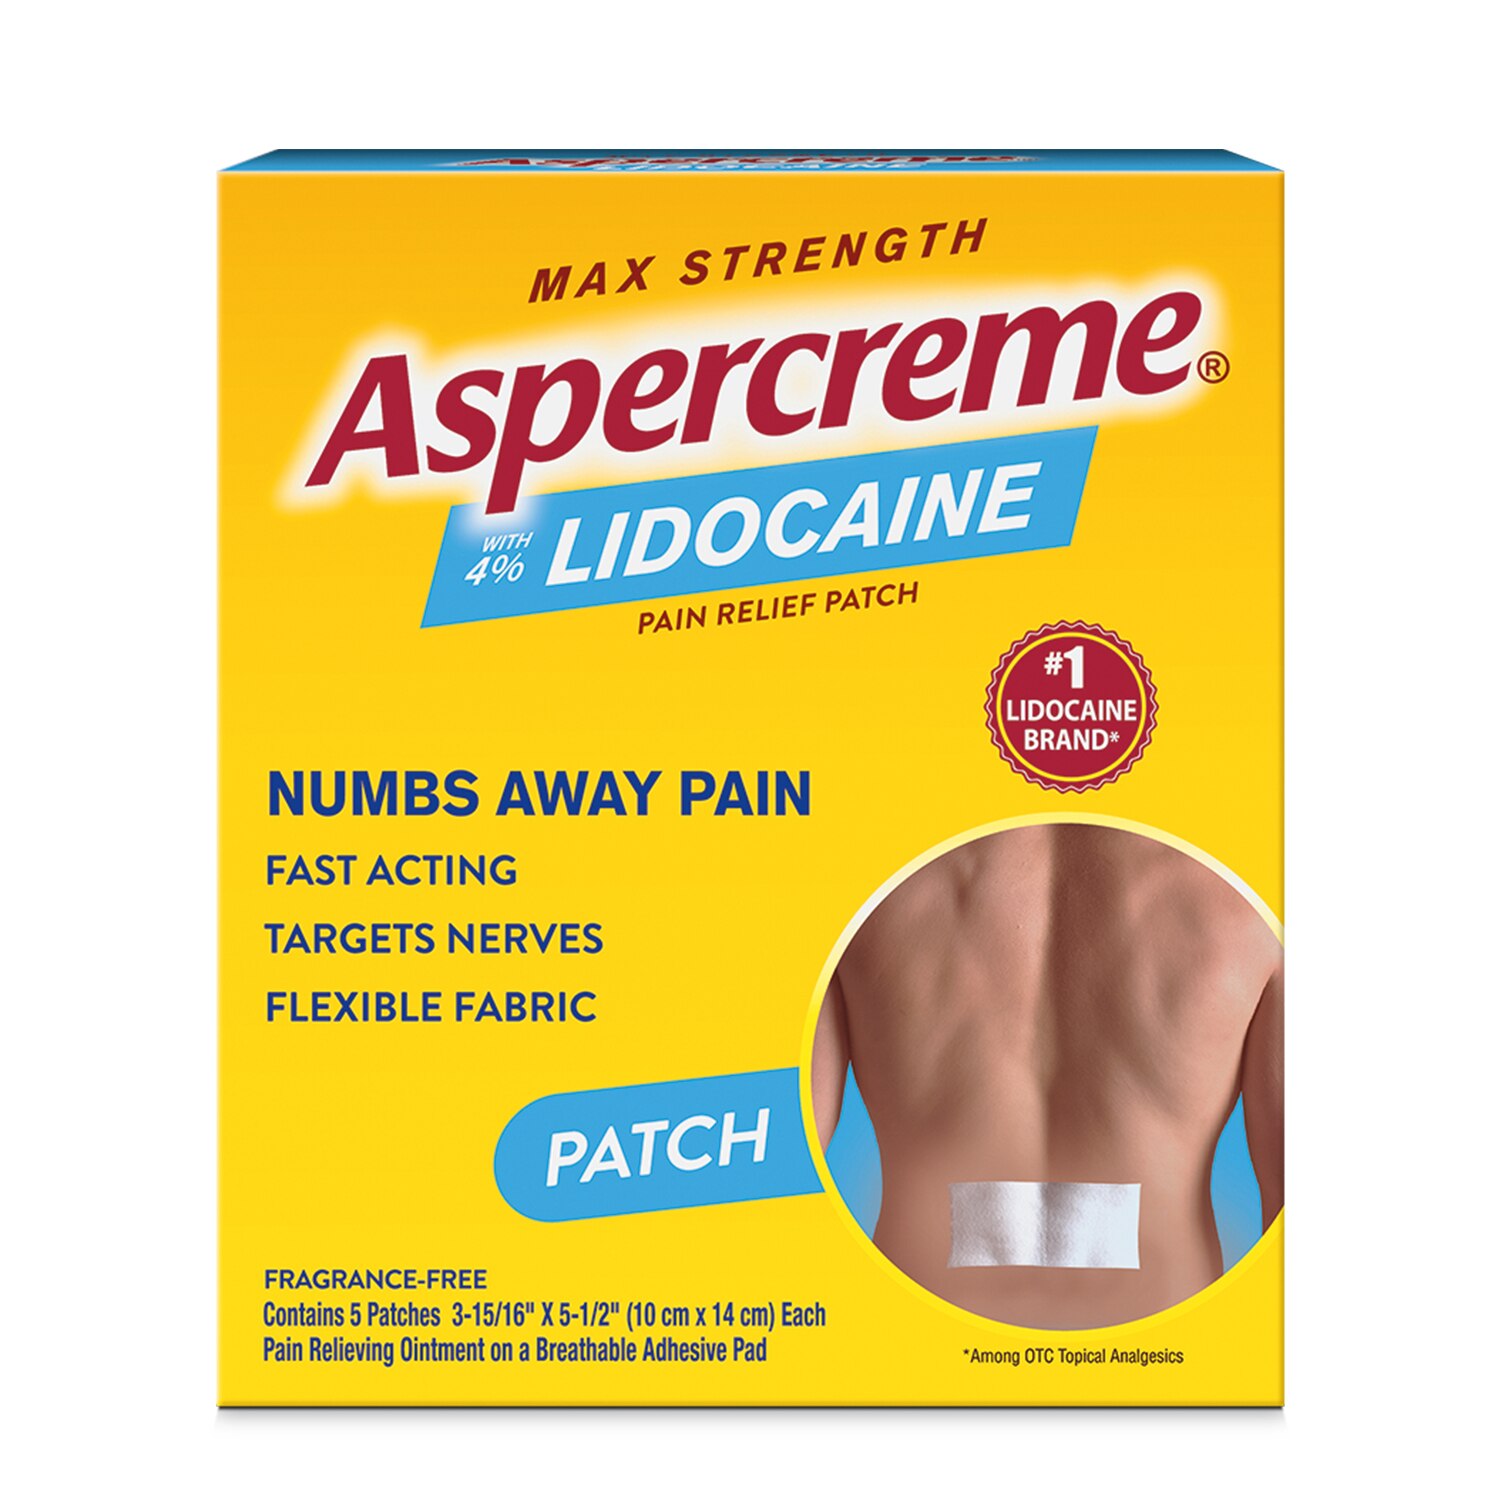 Aspercreme Lidocaine Pain Relief Patch, 5 CT